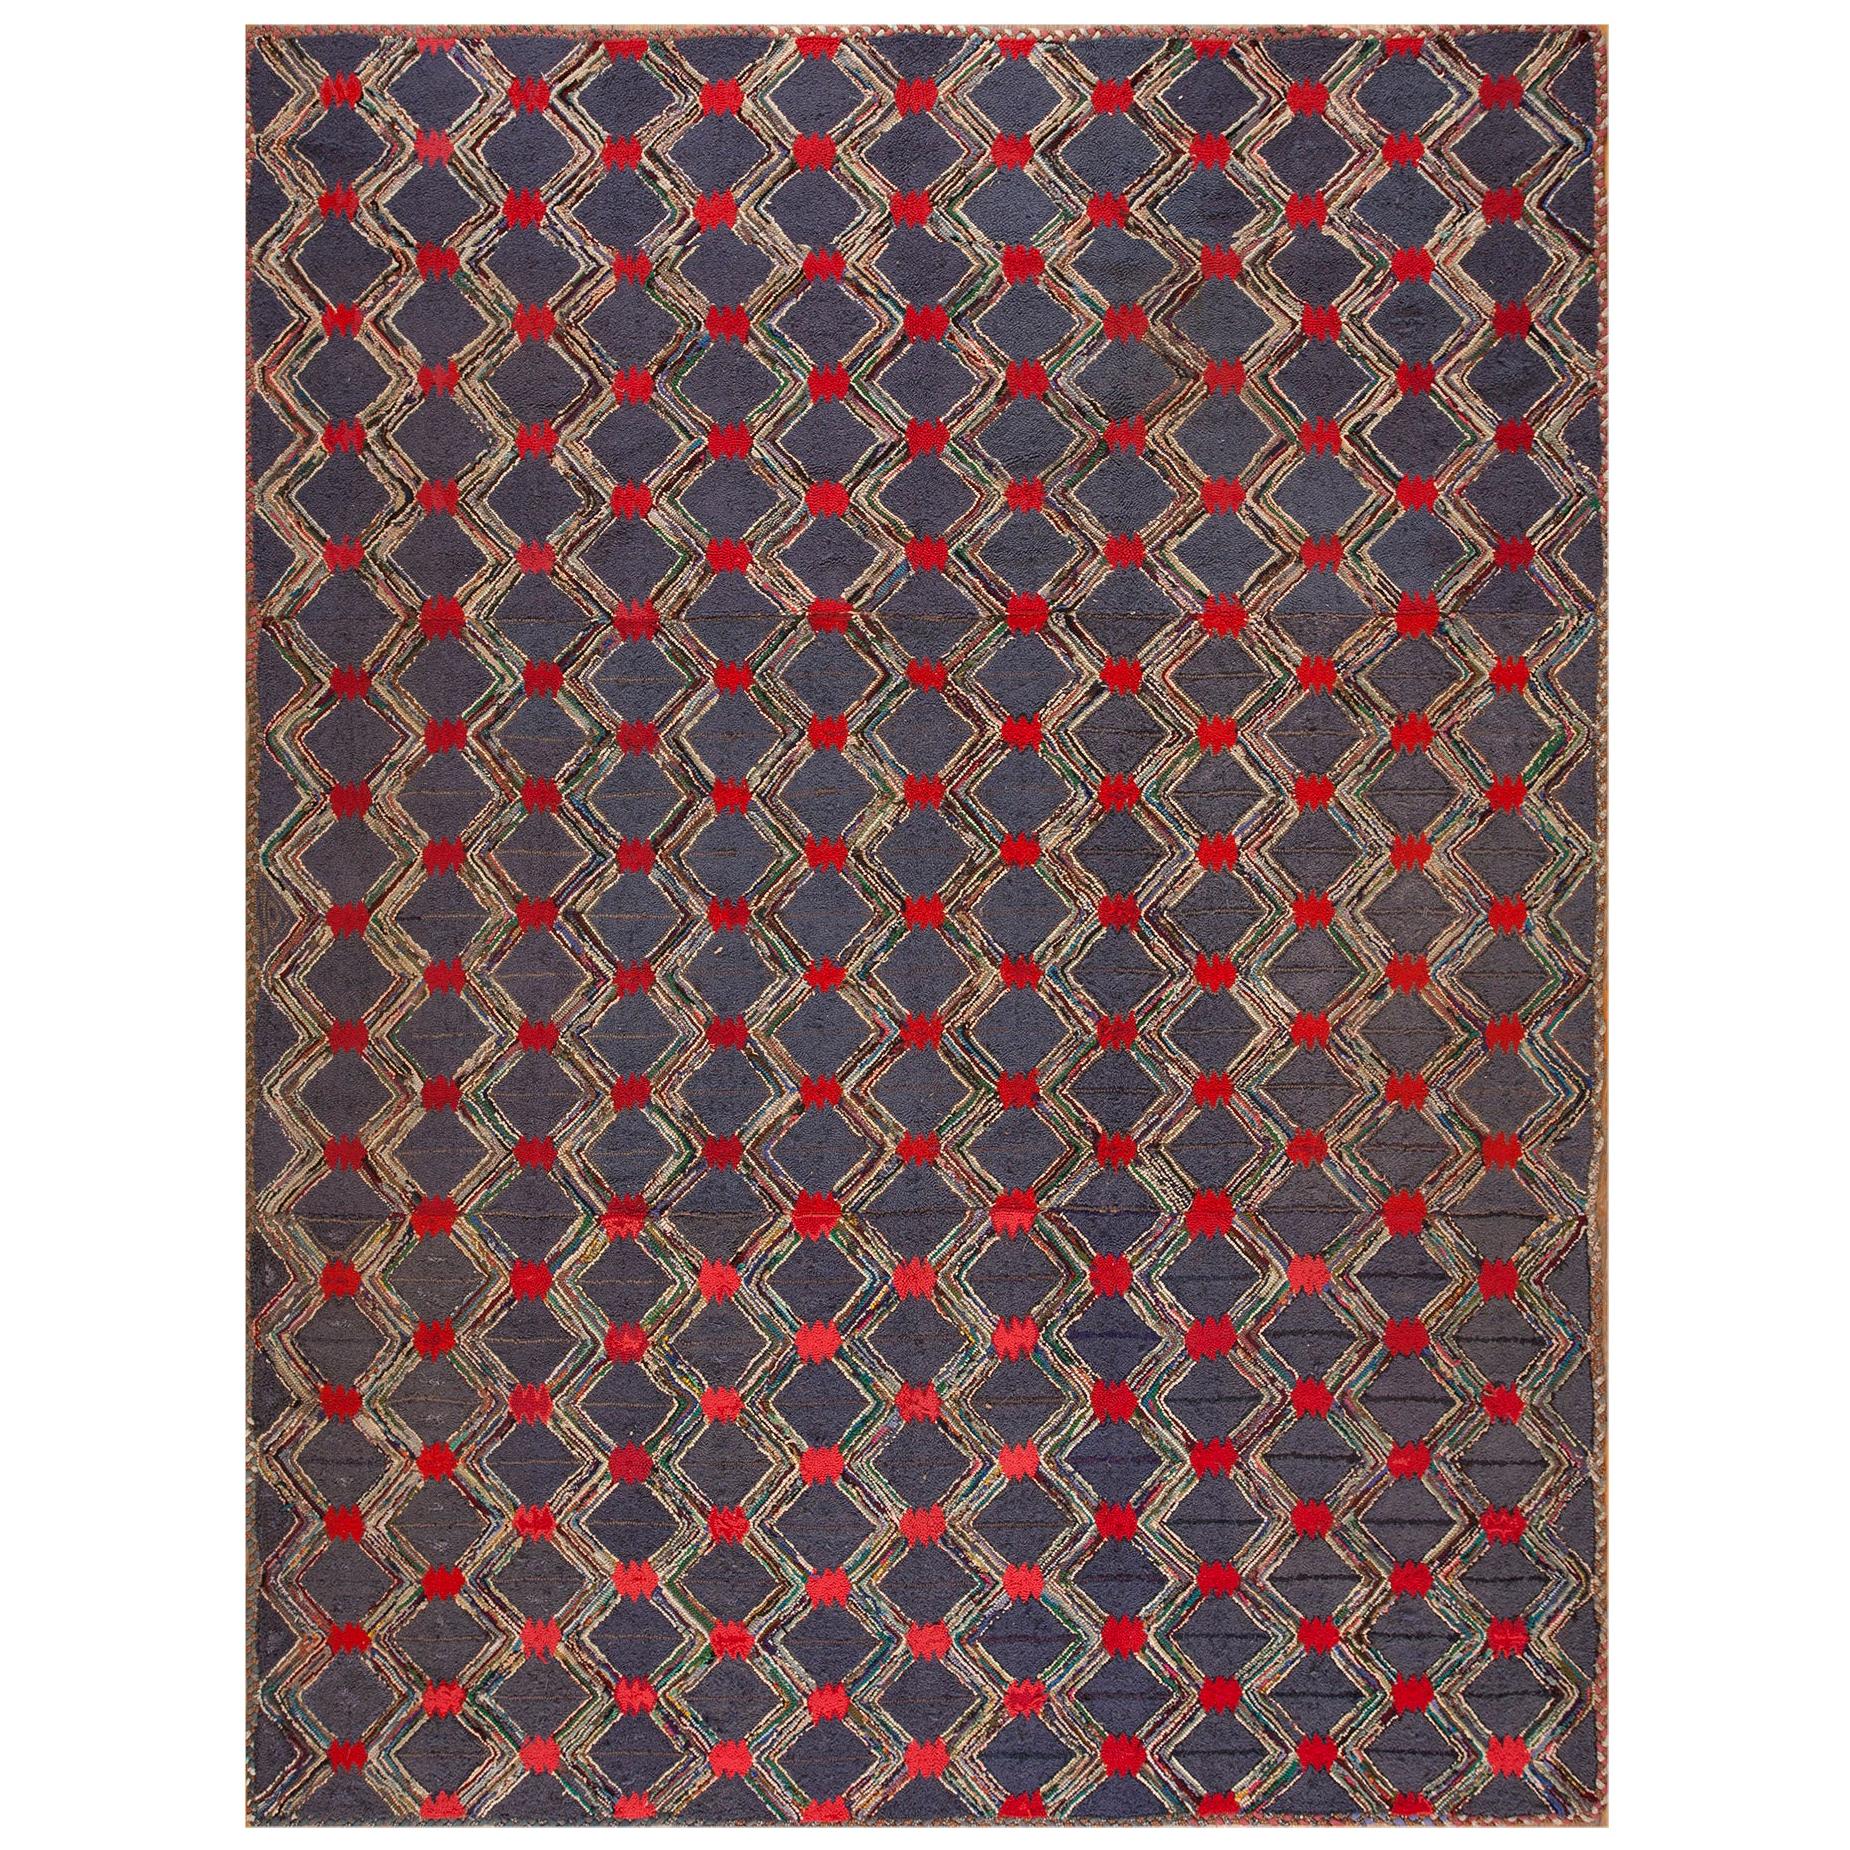 Amerikanischer Hakenteppich aus der Mitte des 20. Jahrhunderts ( 8'6" x 11'6" - 260 x 350 )